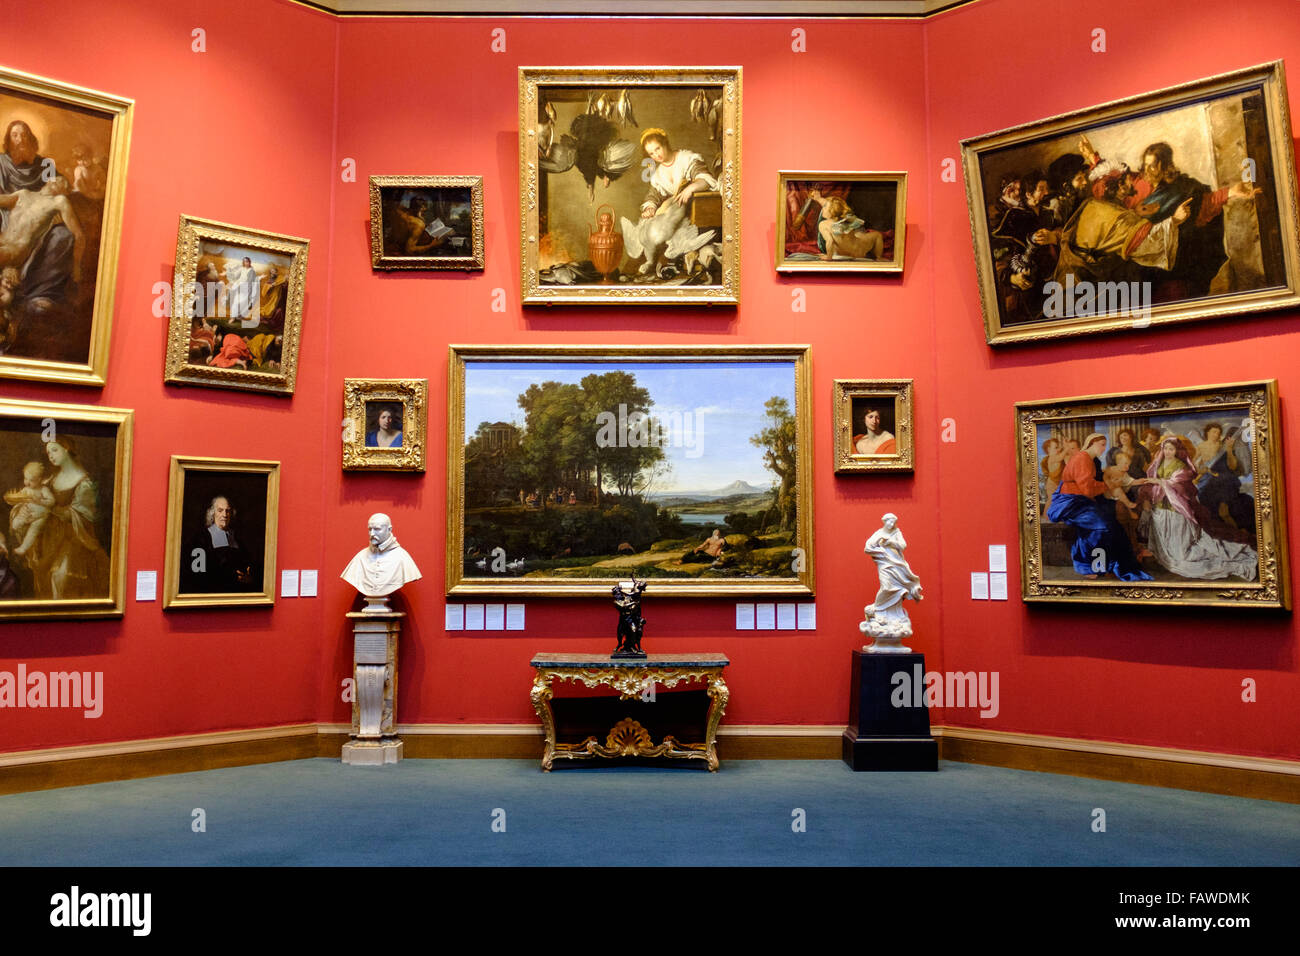 Intérieur du Scottish National Gallery Art Museum à Edimbourg en Ecosse Royaume-Uni Banque D'Images